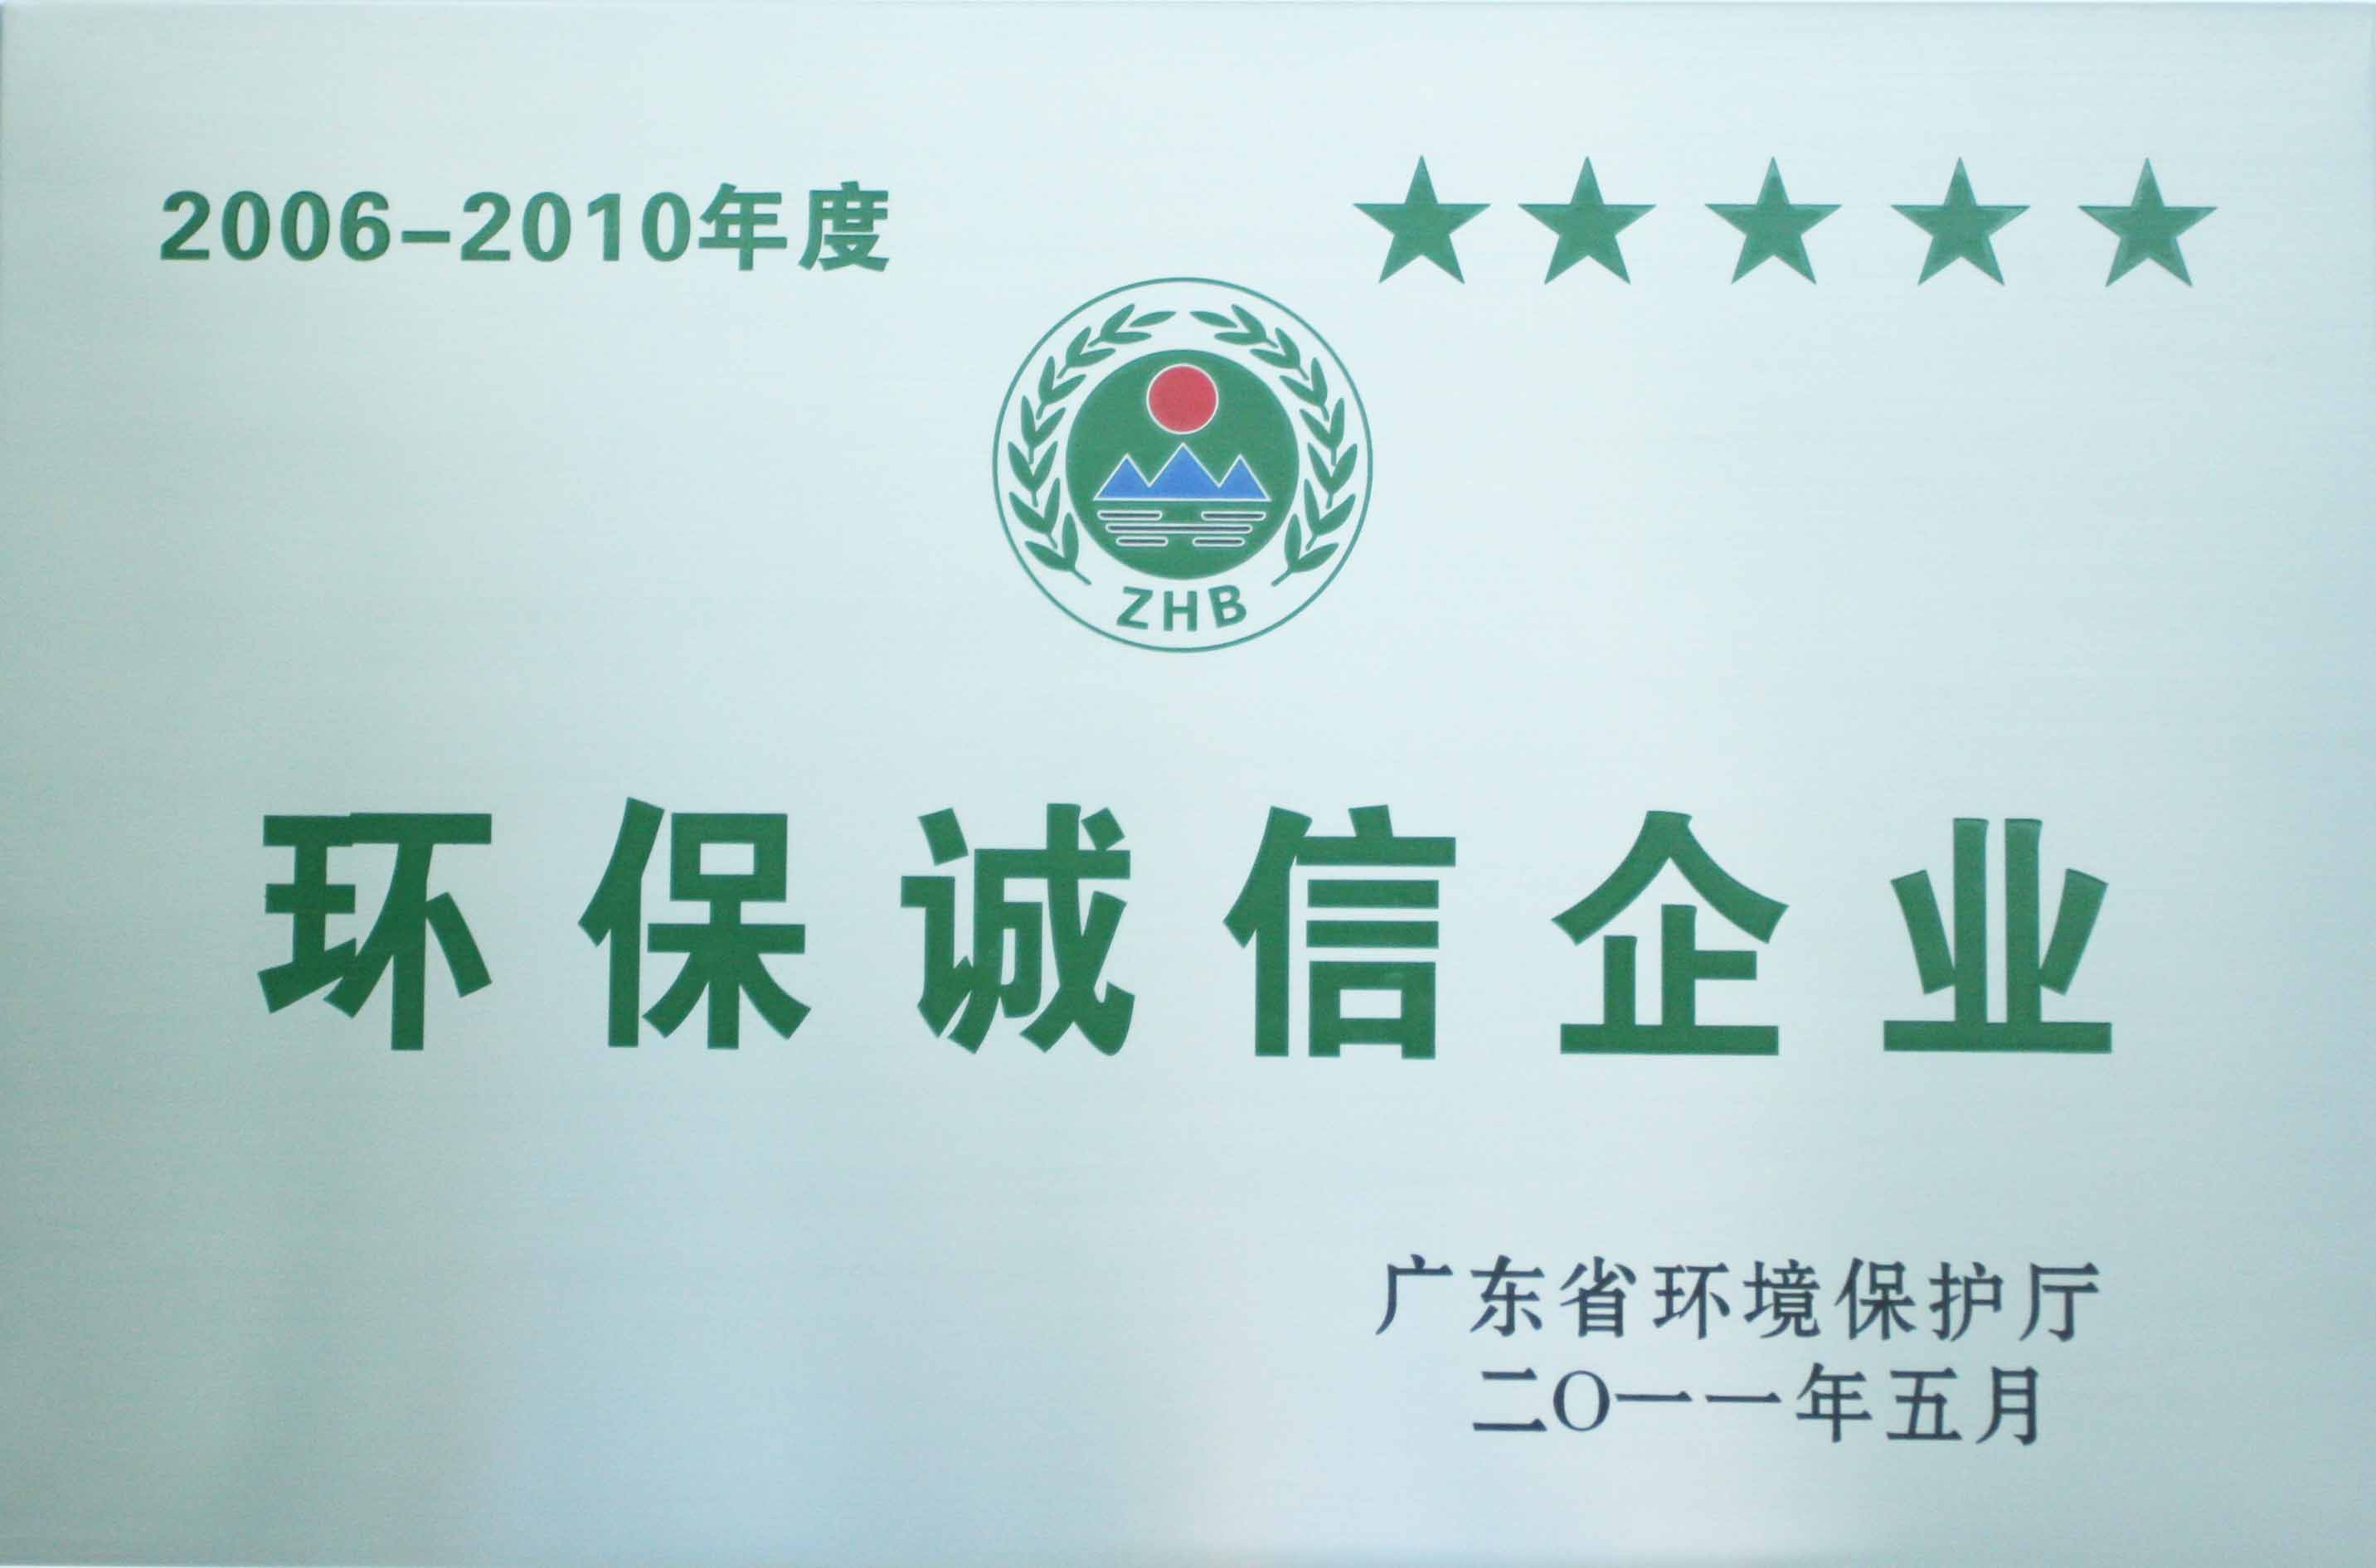 获广东省环保局授予“环保诚信企业”称号